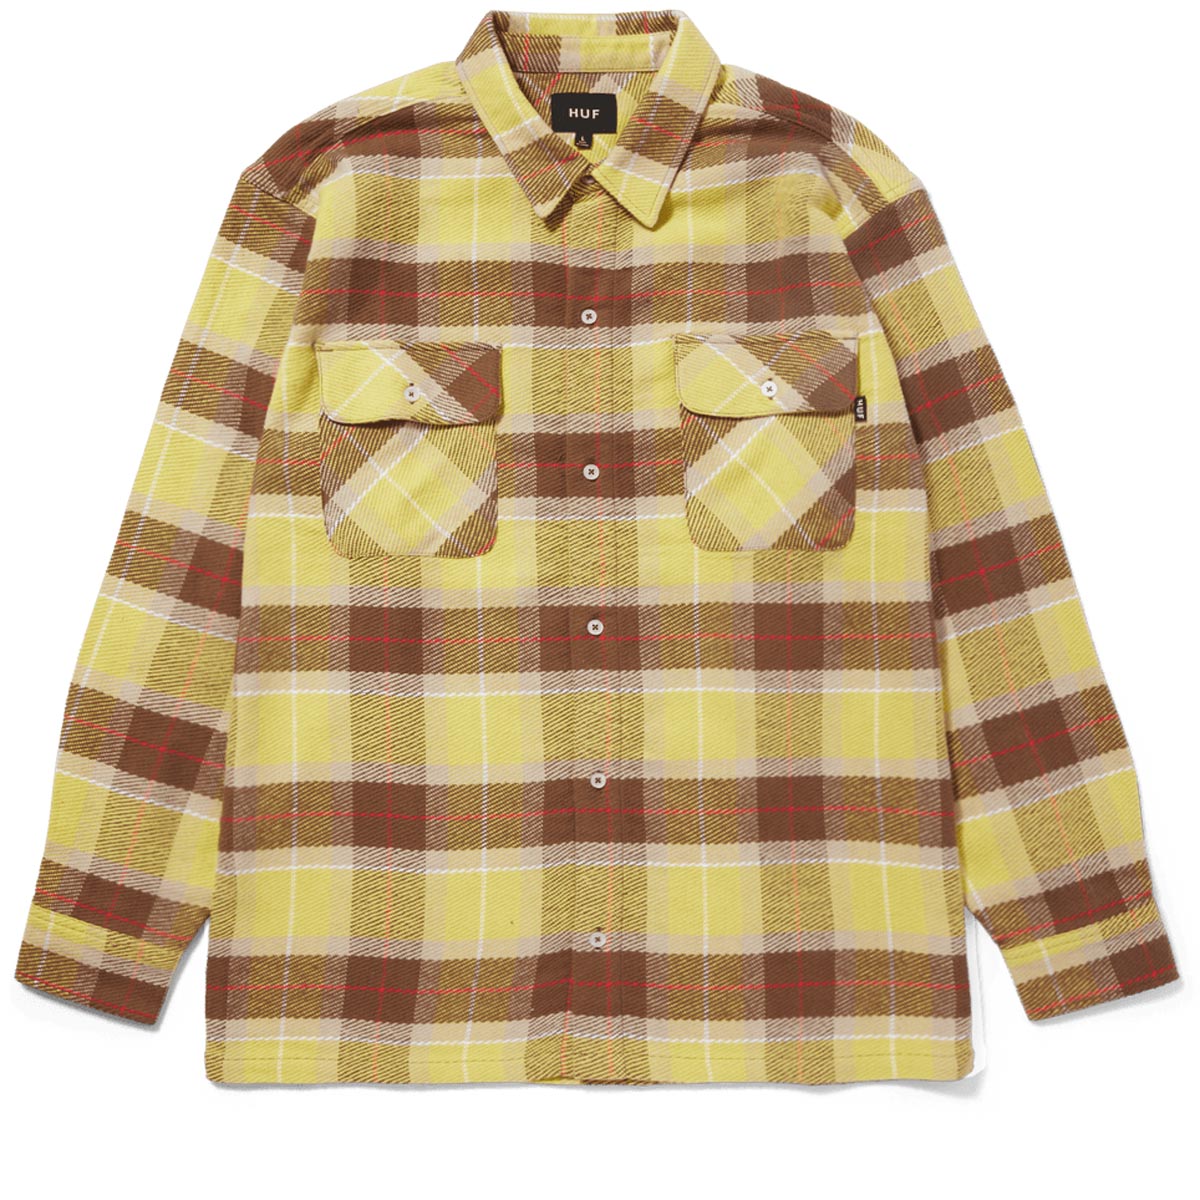 HUF Prescott Flannel Shirt - Yellow image 2